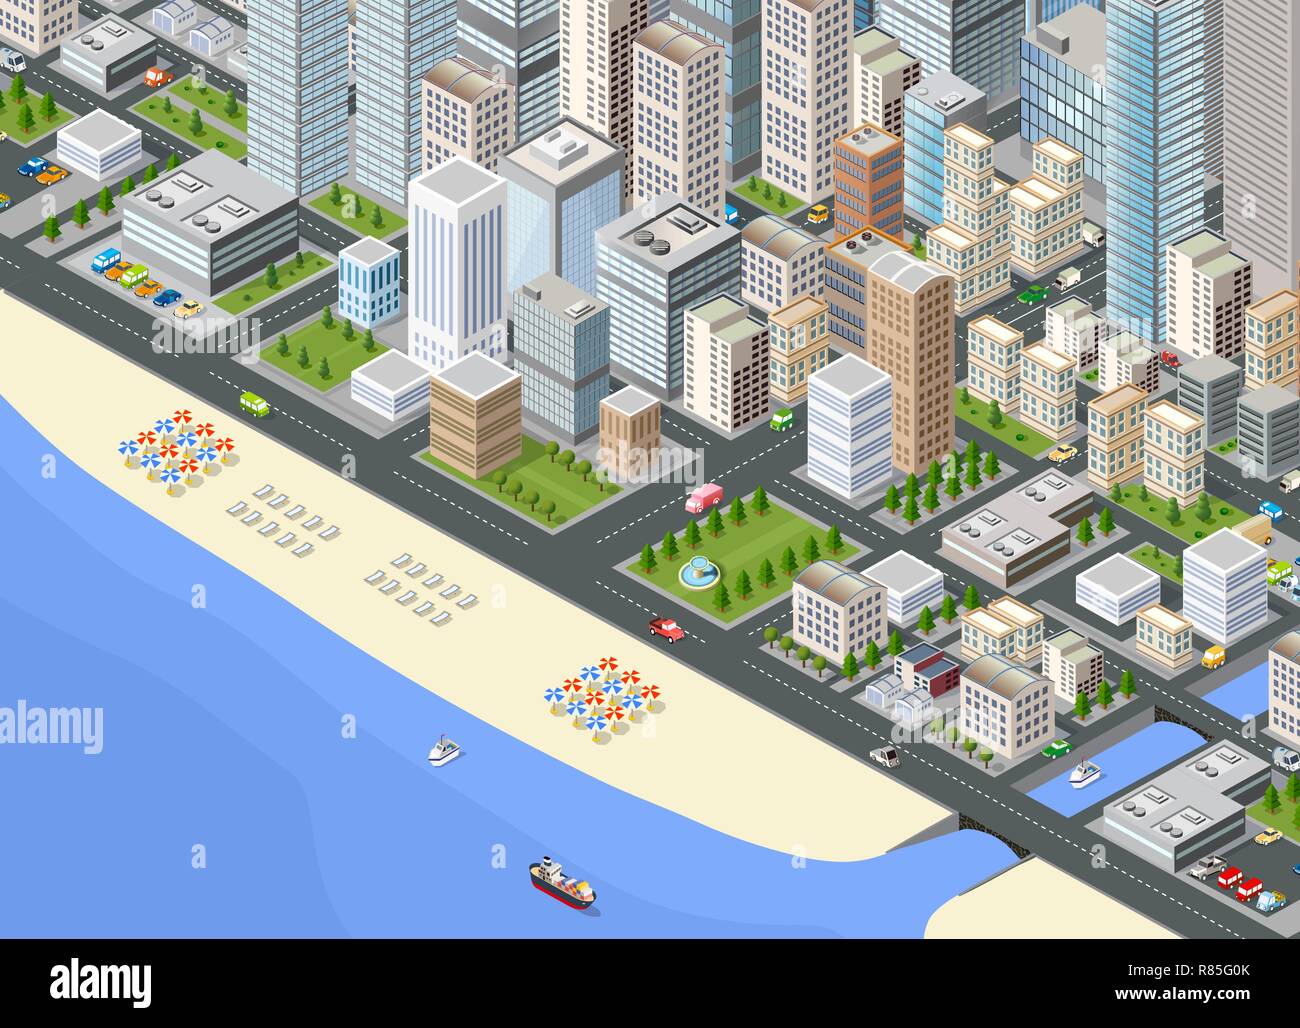 Abbildung: isometrische Große megalopolis Stadtteil mit den Straßen, der Promenade und dem Strand mit Sonnenschirmen und Liegen Stock Vektor